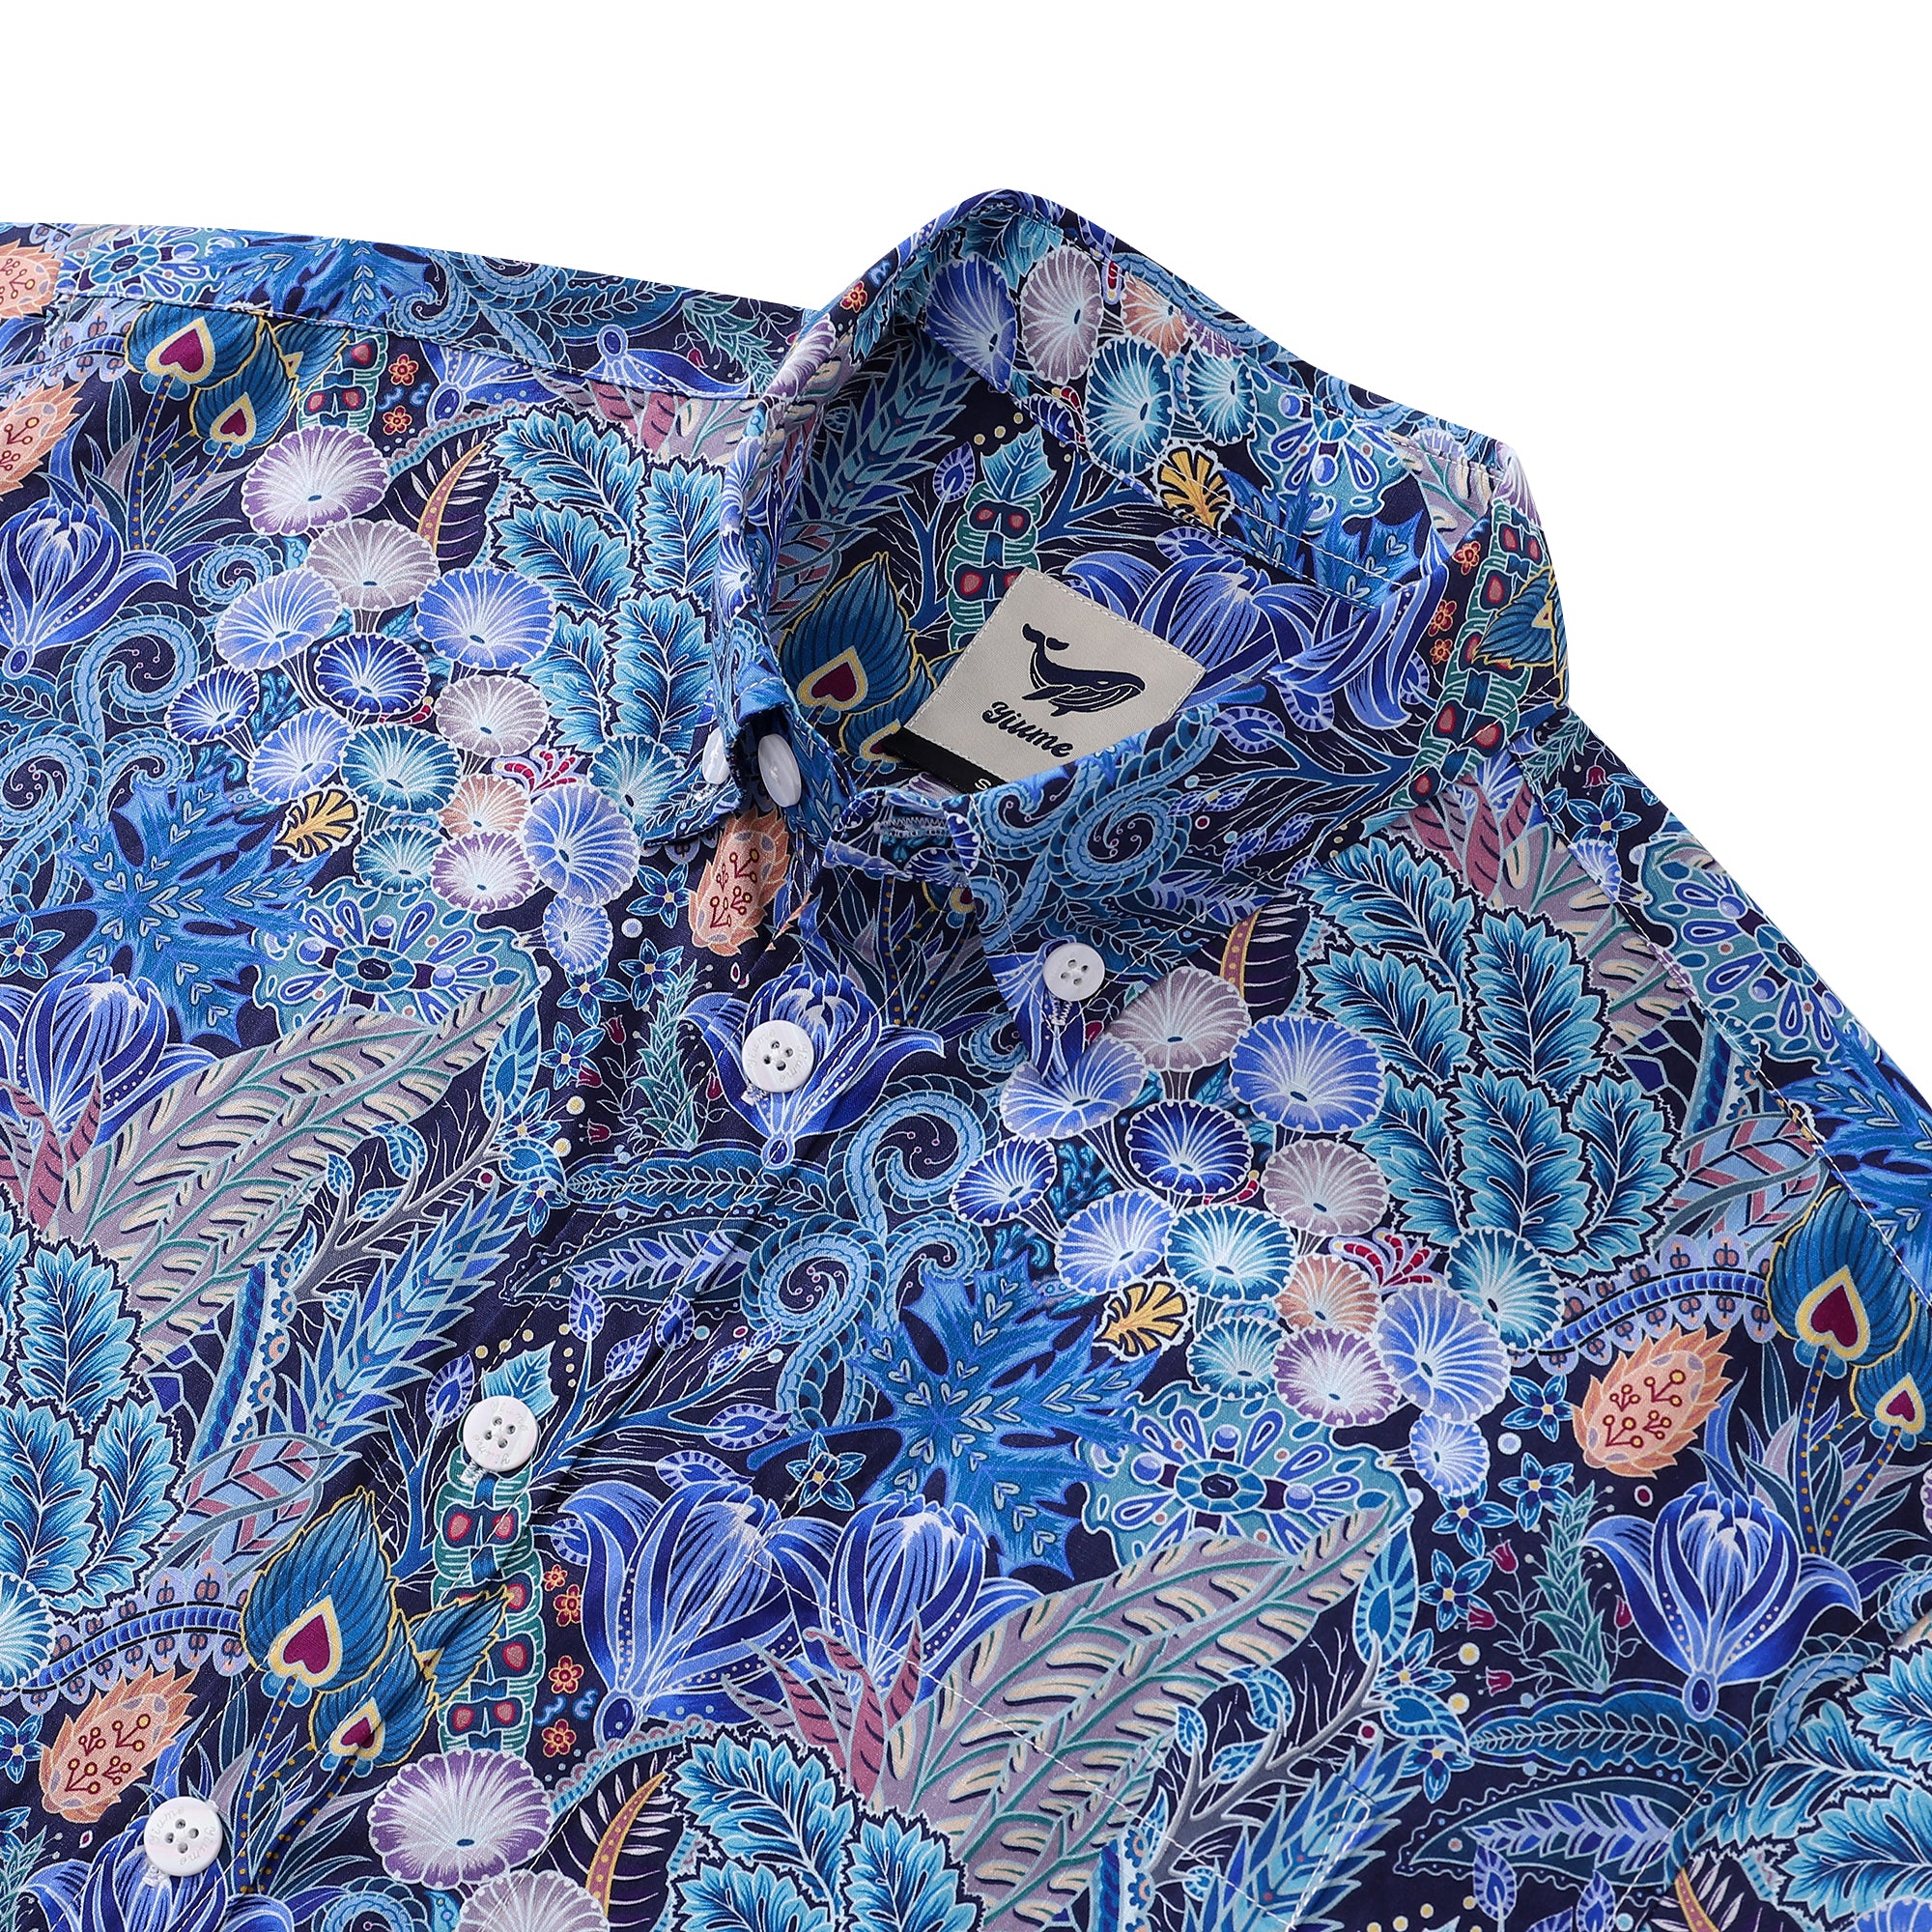 Chemise hawaïenne pour hommes, motif Floral, série 2, imprimé, coton, boutonnée, manches courtes, chemise Aloha